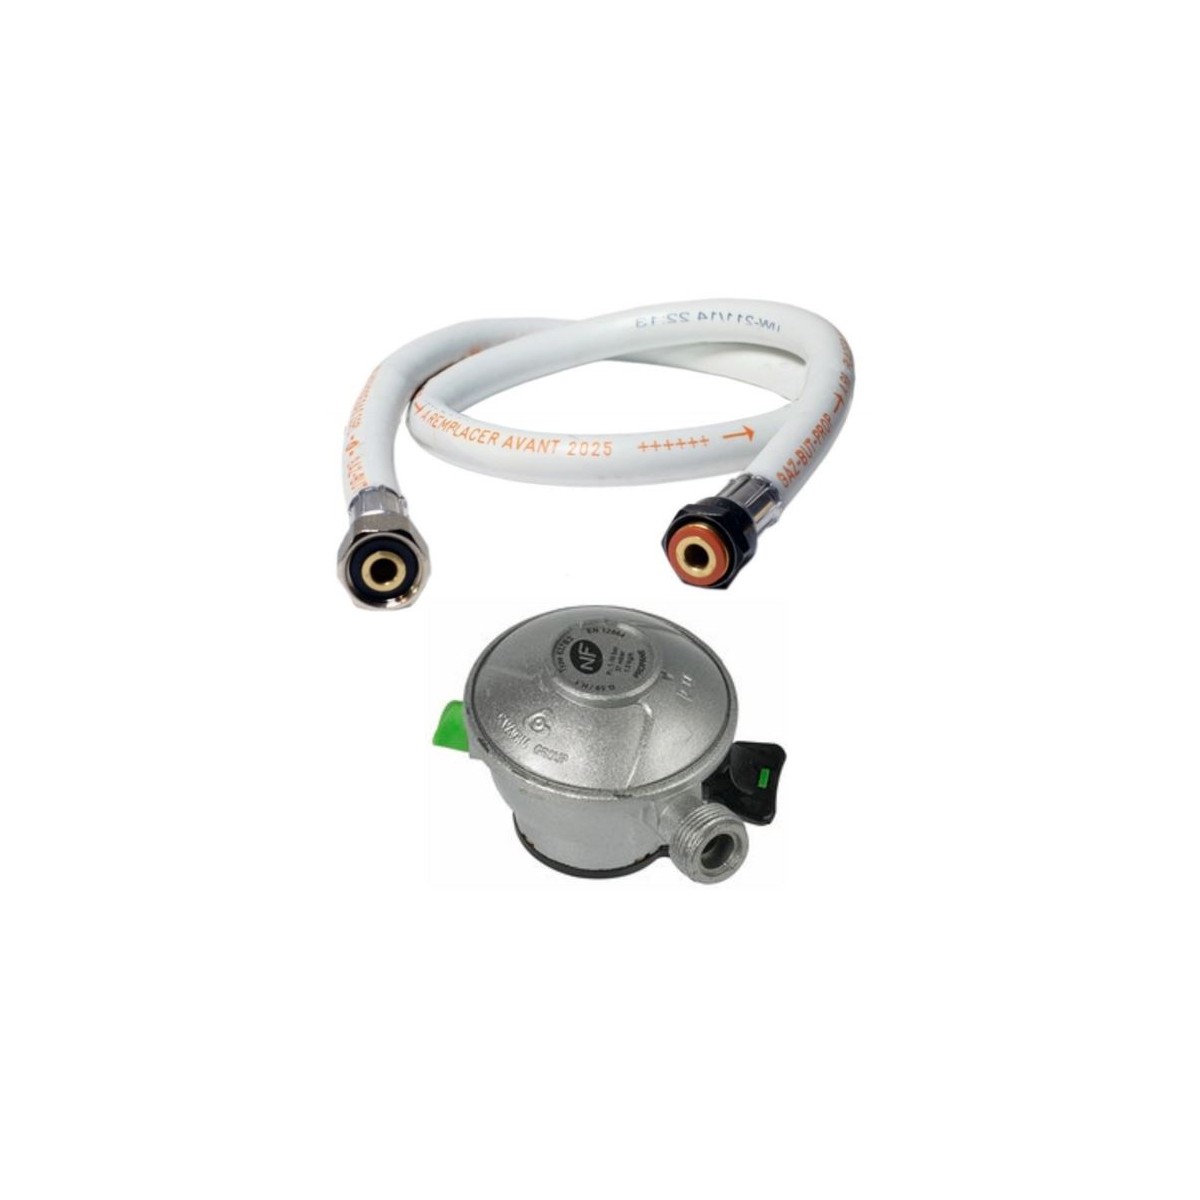 Tuyau flexible gaz 2 m + détendeur butane clip quick-on valve diam 27mm kemper